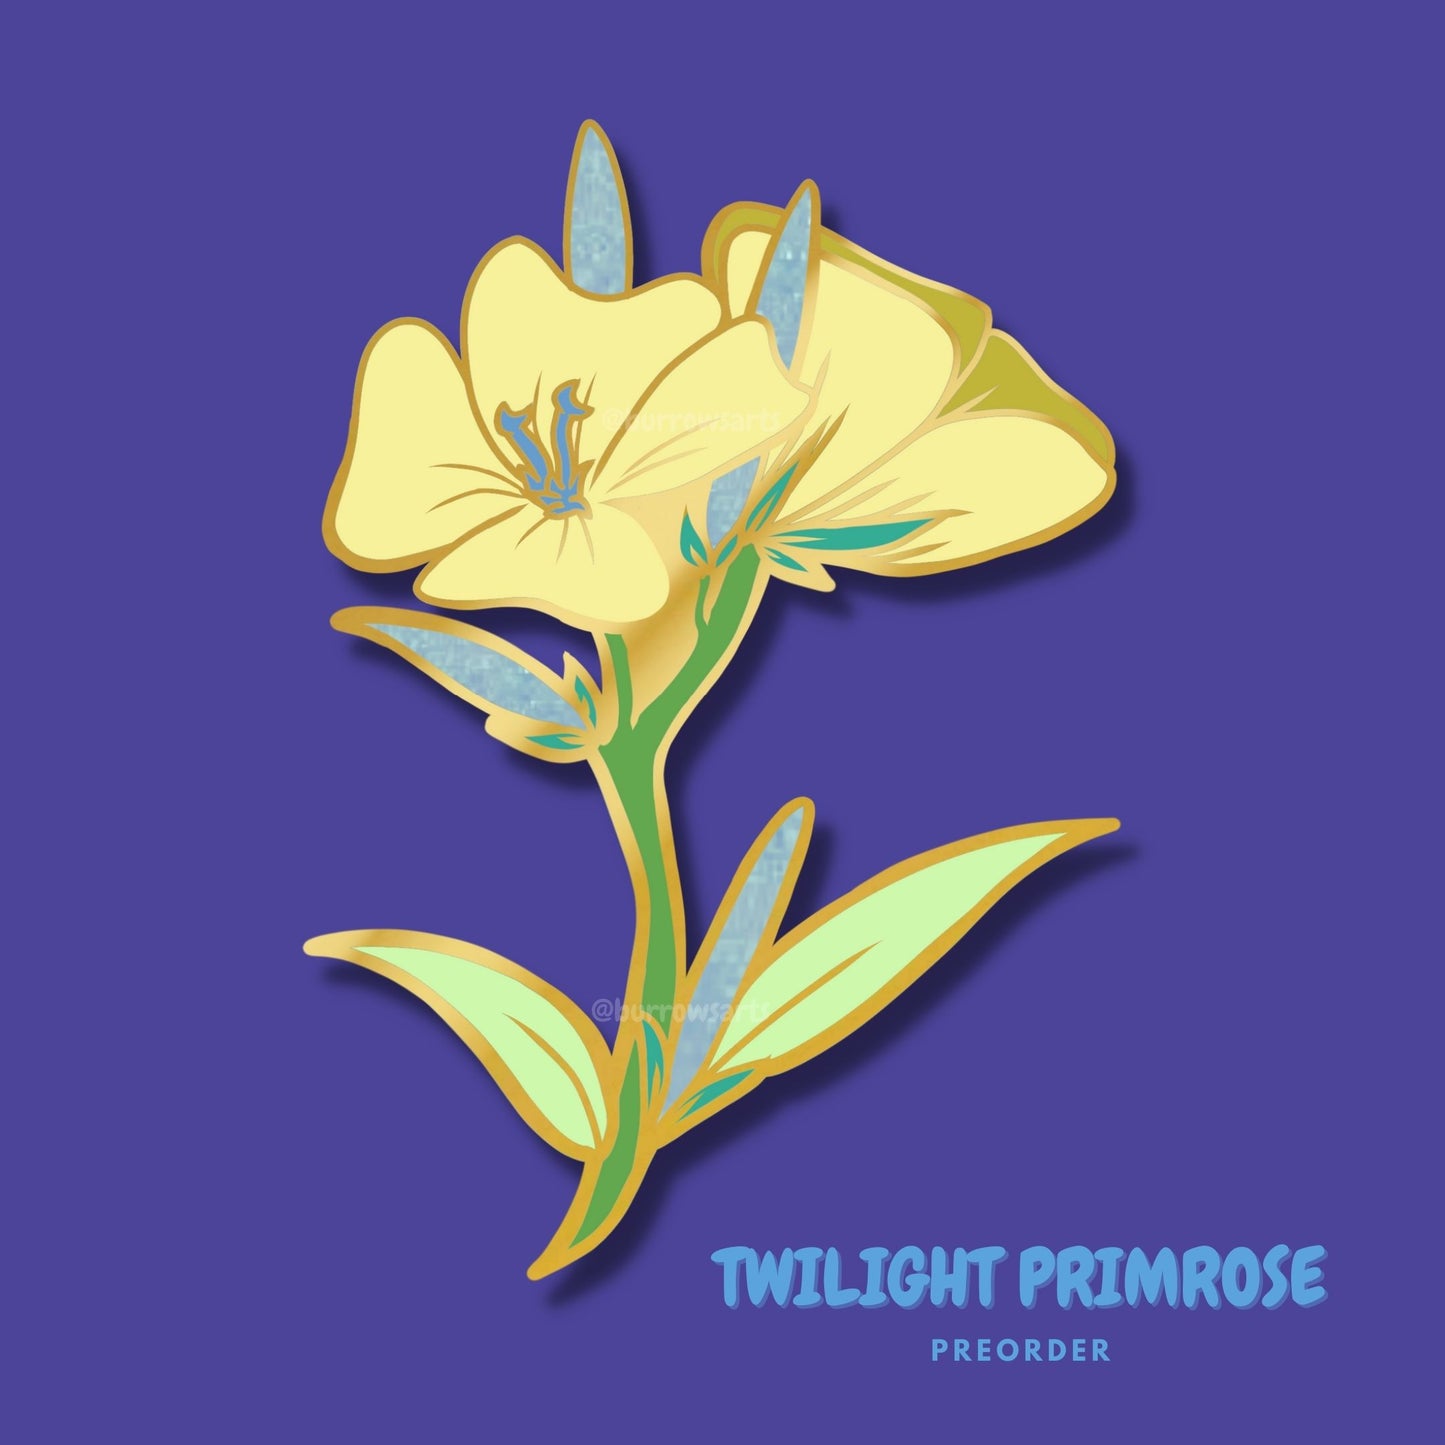 PREORDER Twilight Primrose - Enamel Pin